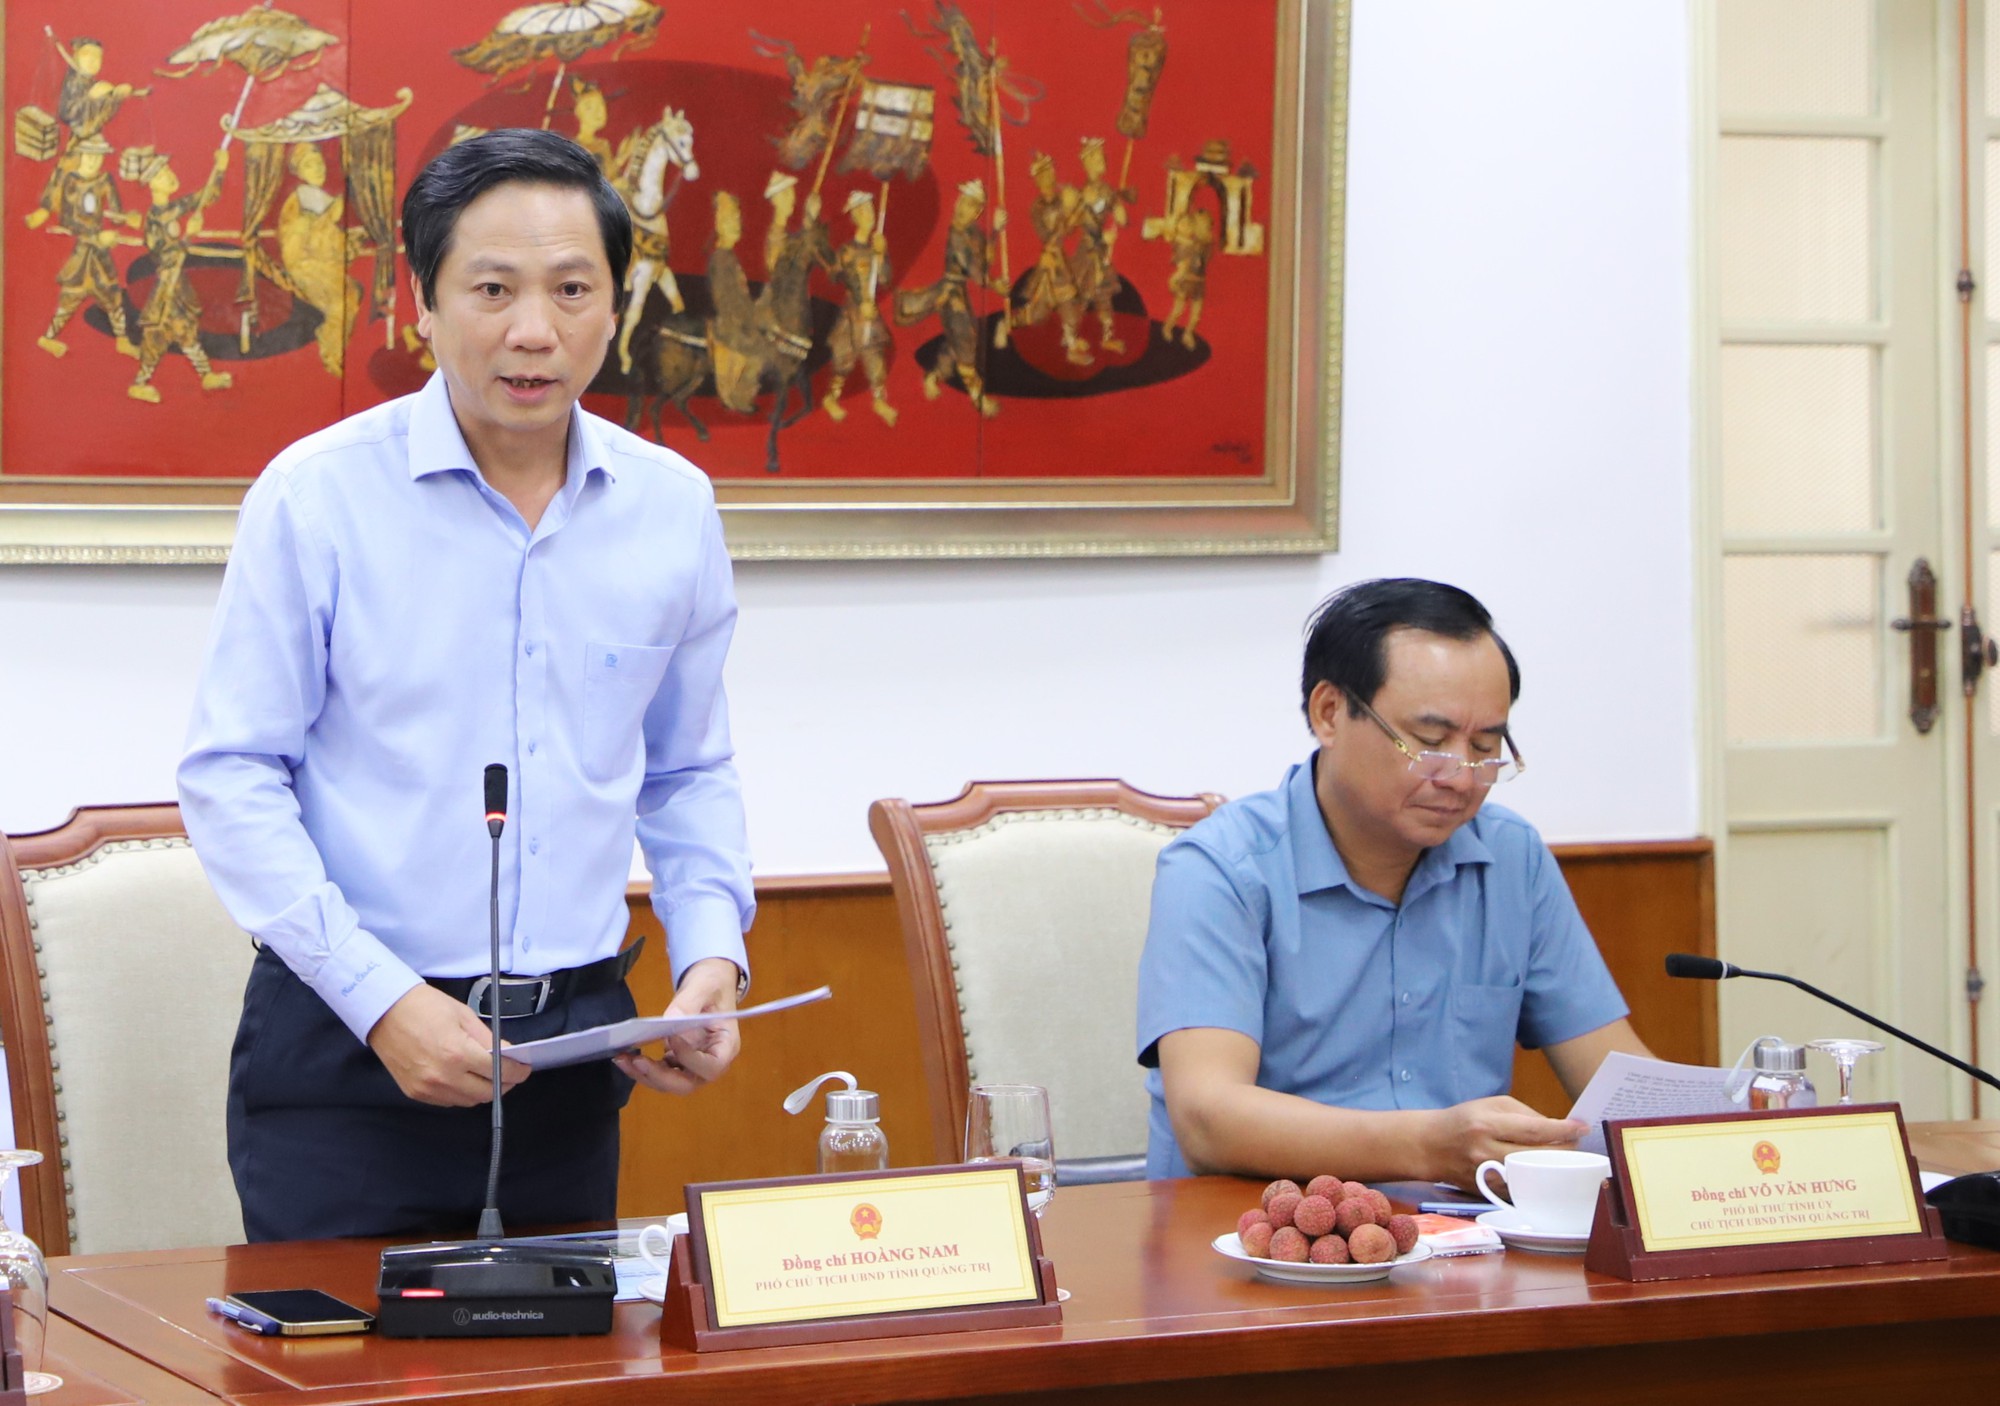 Bộ trưởng Nguyễn Văn Hùng: Nhân lên sức mạnh từ văn hóa và bằng văn hóa để phát triển tỉnh Quảng Trị - Ảnh 2.